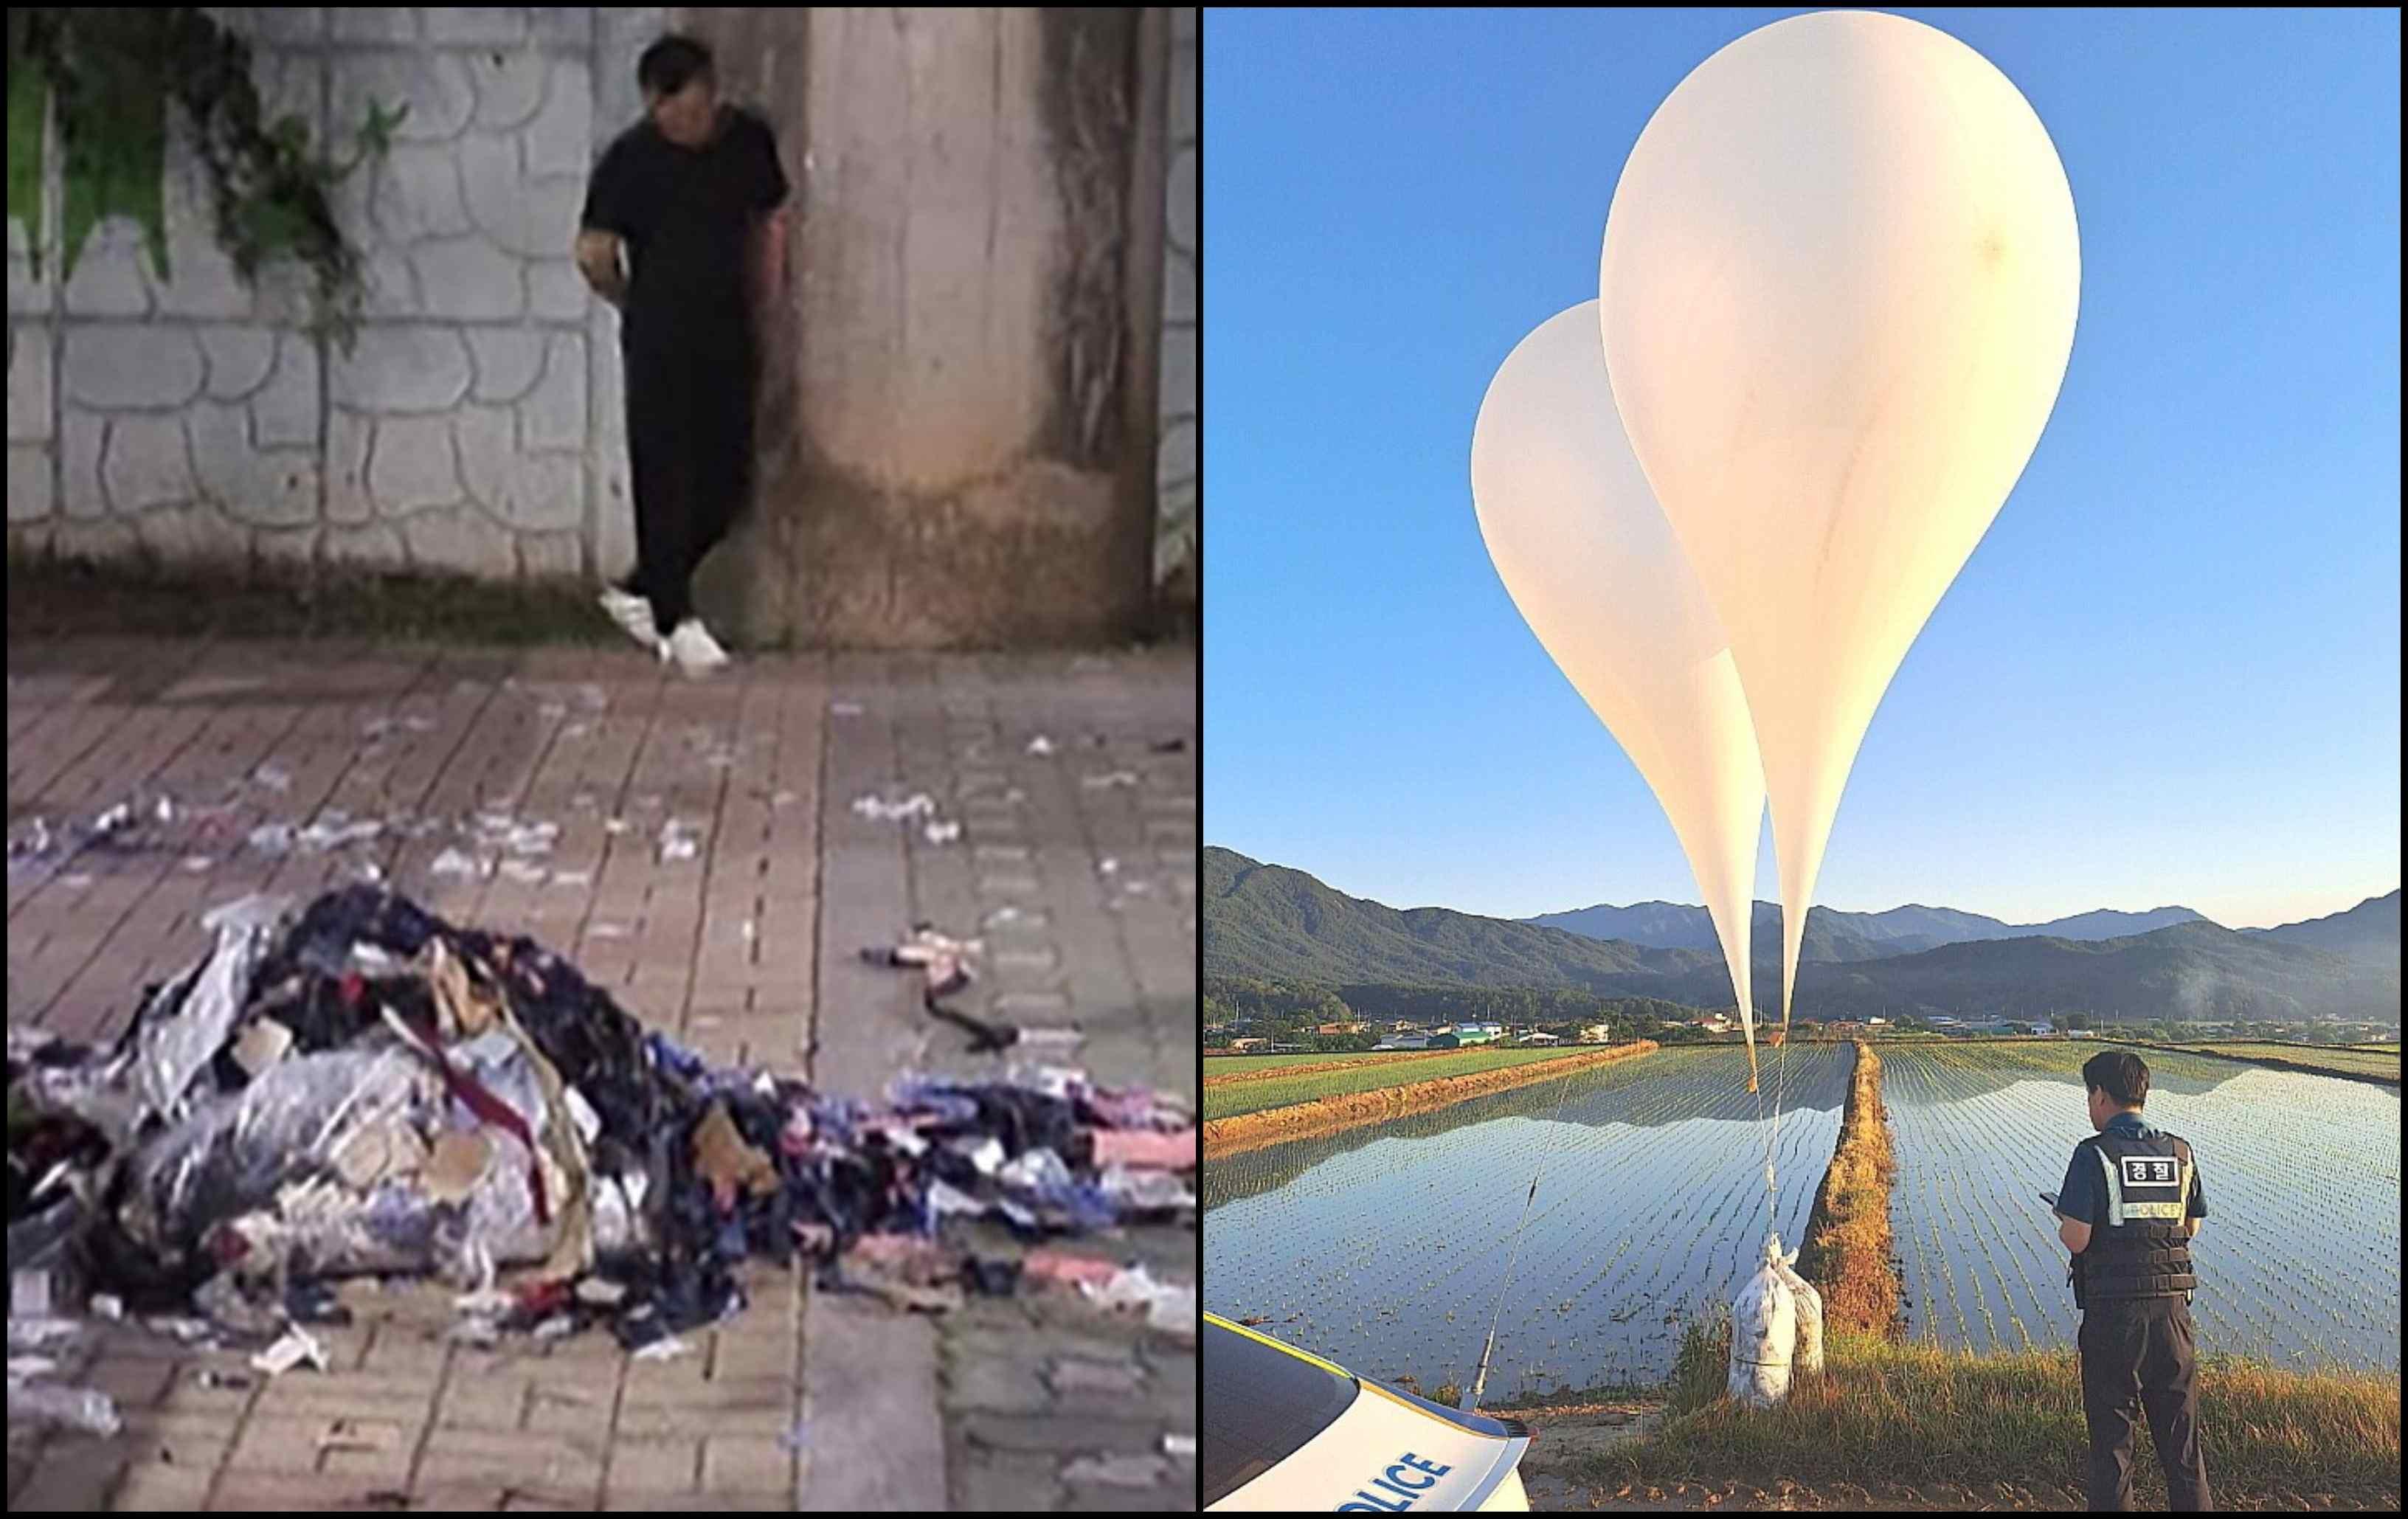 Kuzey Kore yine çöplerini komşuya attı: 600 balon gönderdi!